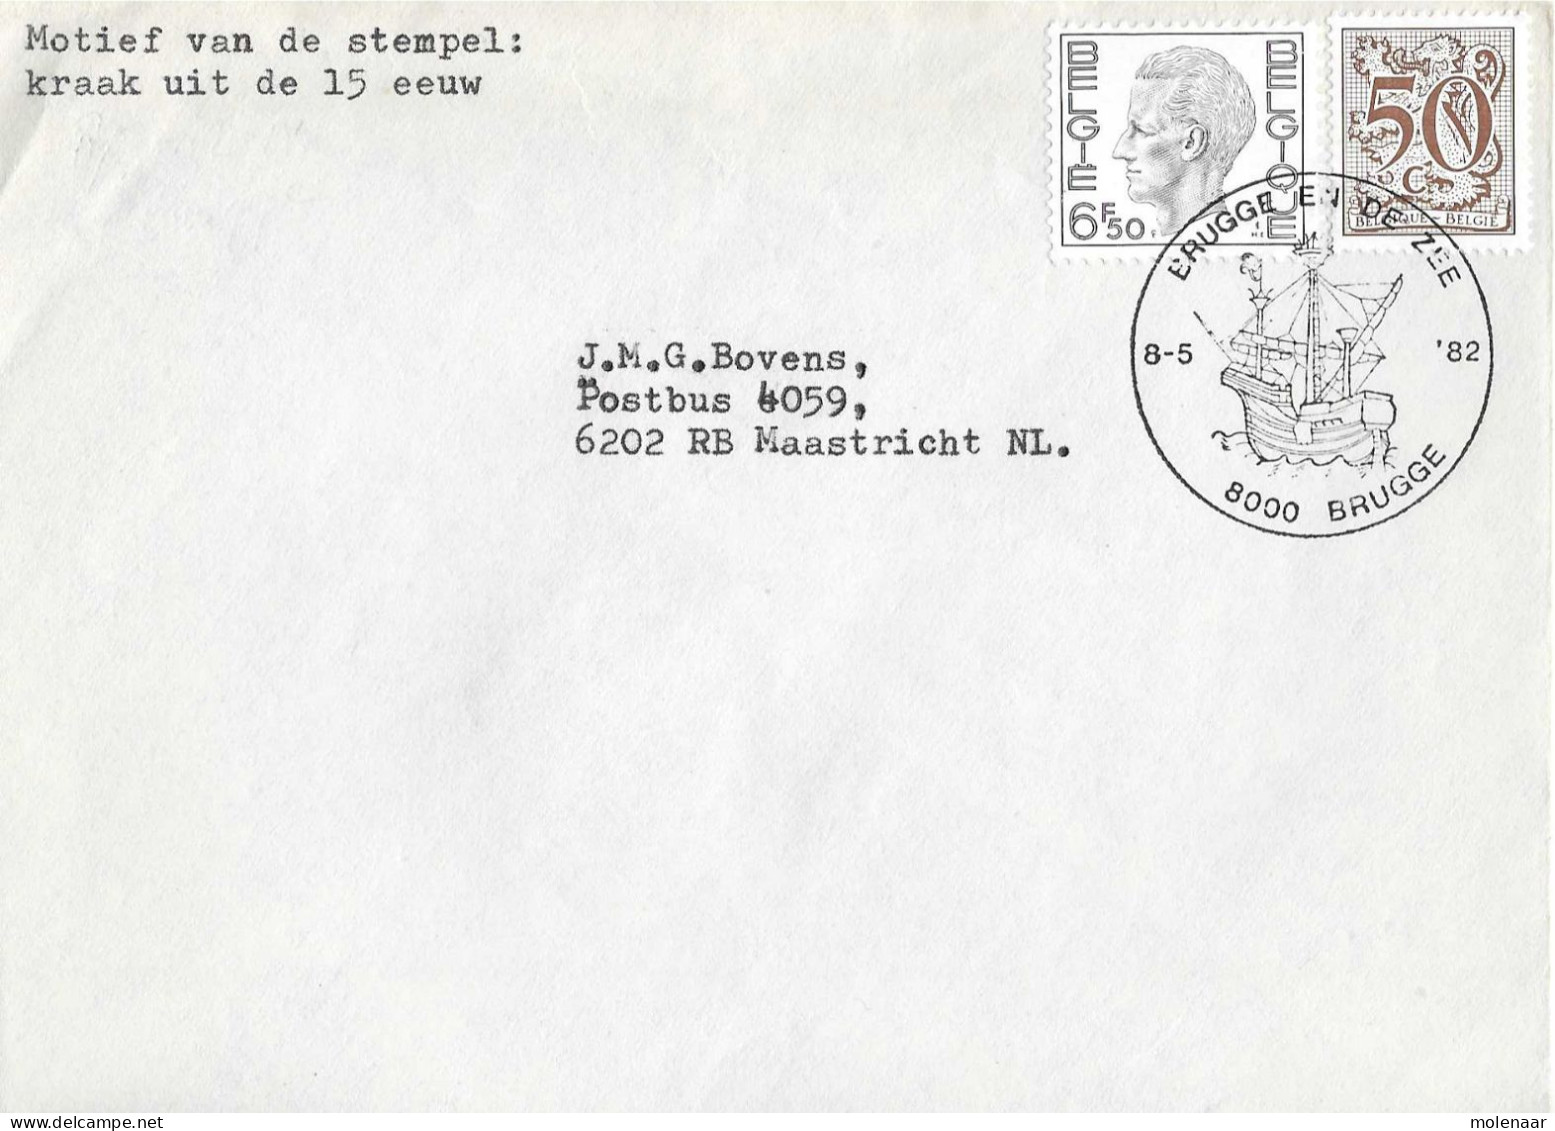 Postzegels > Europa > België > 1951-... > 1981-1990 > Brief Uit 1982 Met 2 Zegels (17041) - Covers & Documents